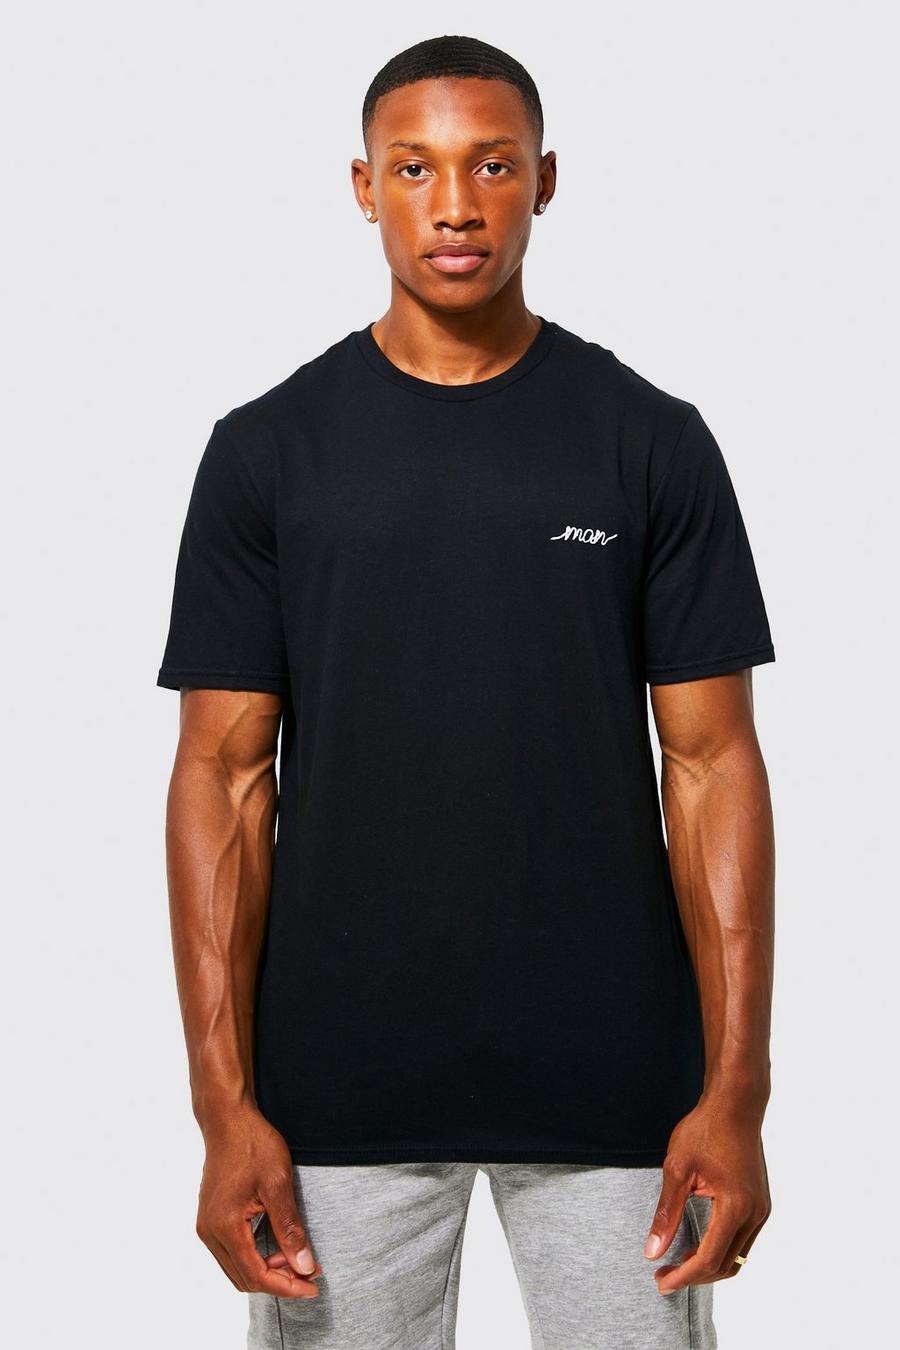 T-shirt brodé - MAN, Black